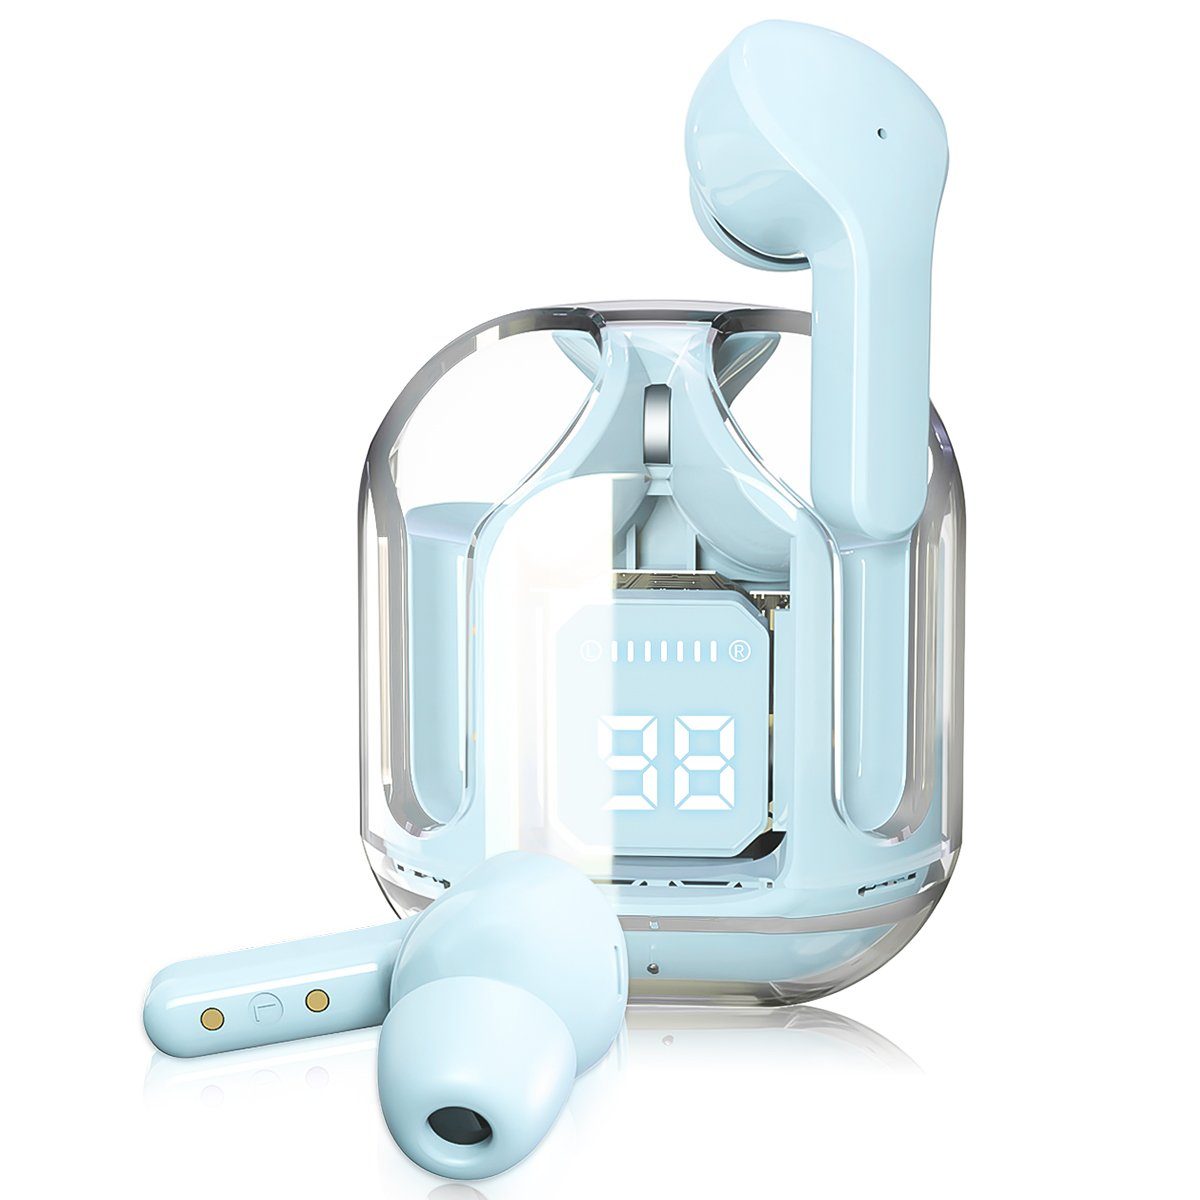 7Magic Kabellos Kopfhoerer mit Dual Mikrofon wireless In-Ear-Kopfhörer (Komposit-Audiotreiber für HiFi Stereoklang, Bluetooth 5.3 + EDR, 1,5 Stunden Wiedergabe mit einer 10-minütigen Aufladung) Blau